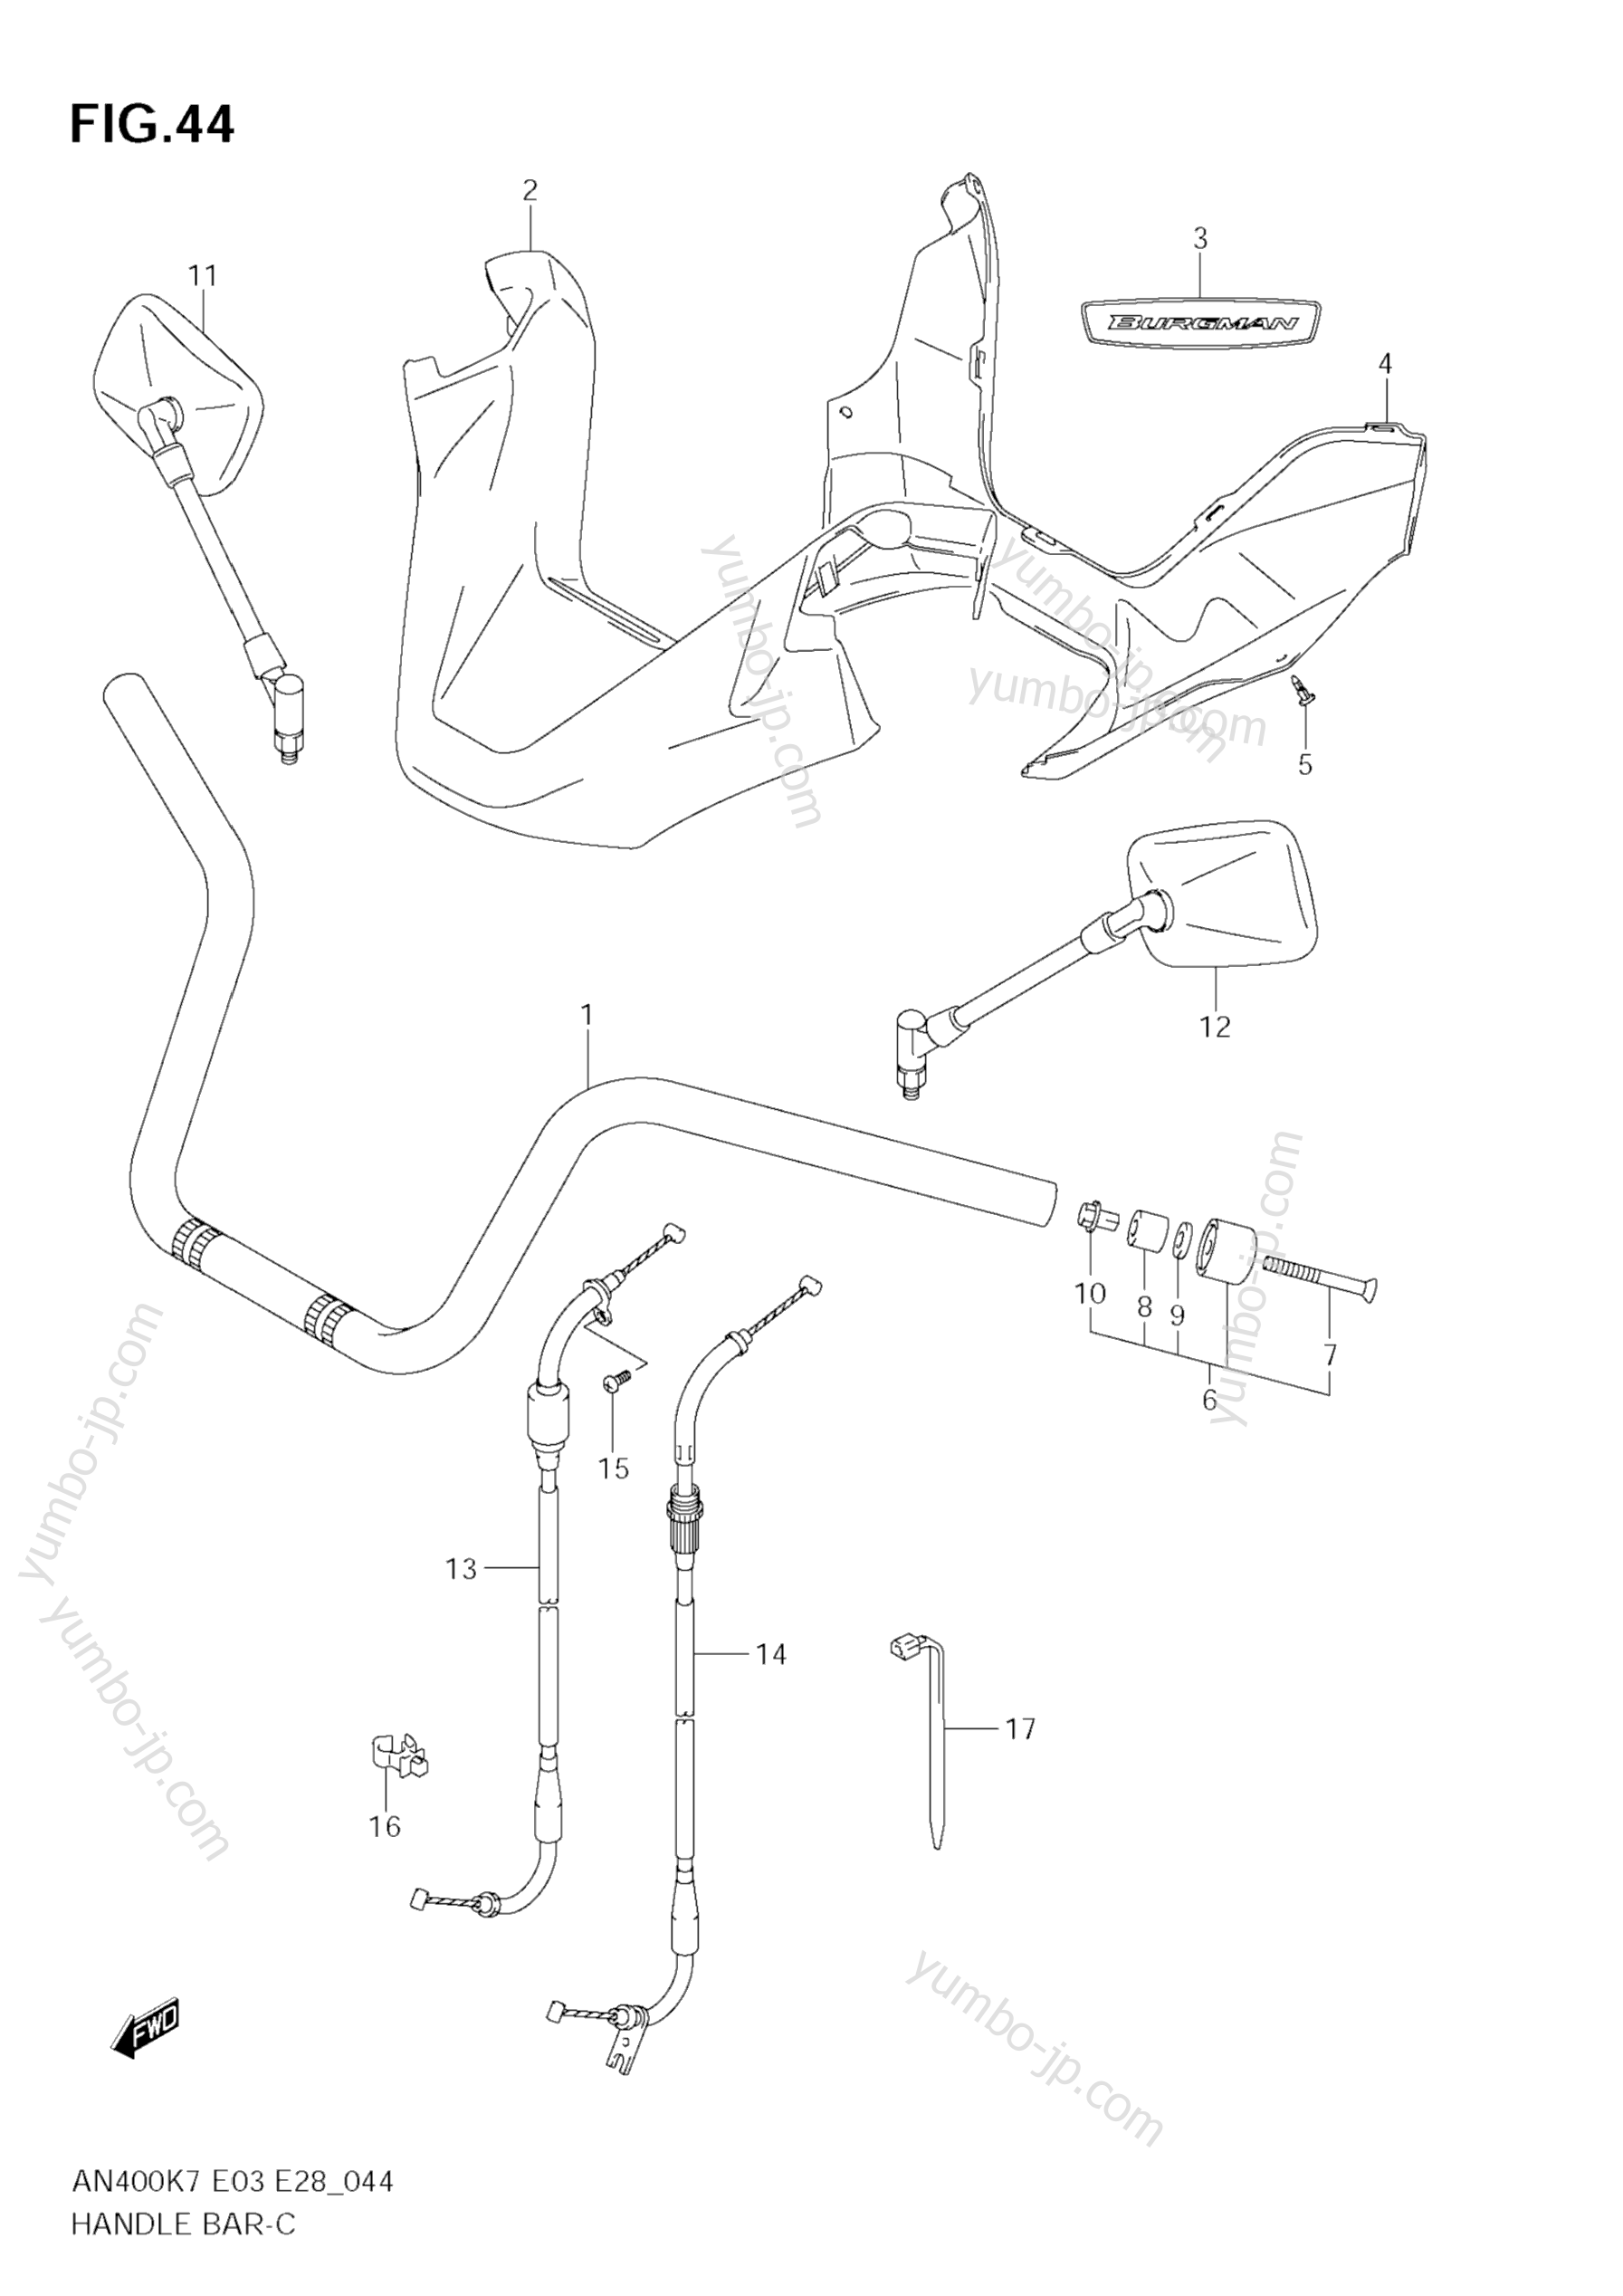 Румпель (рукоятка управления) для скутеров SUZUKI Burgman (AN400) 2008 г.